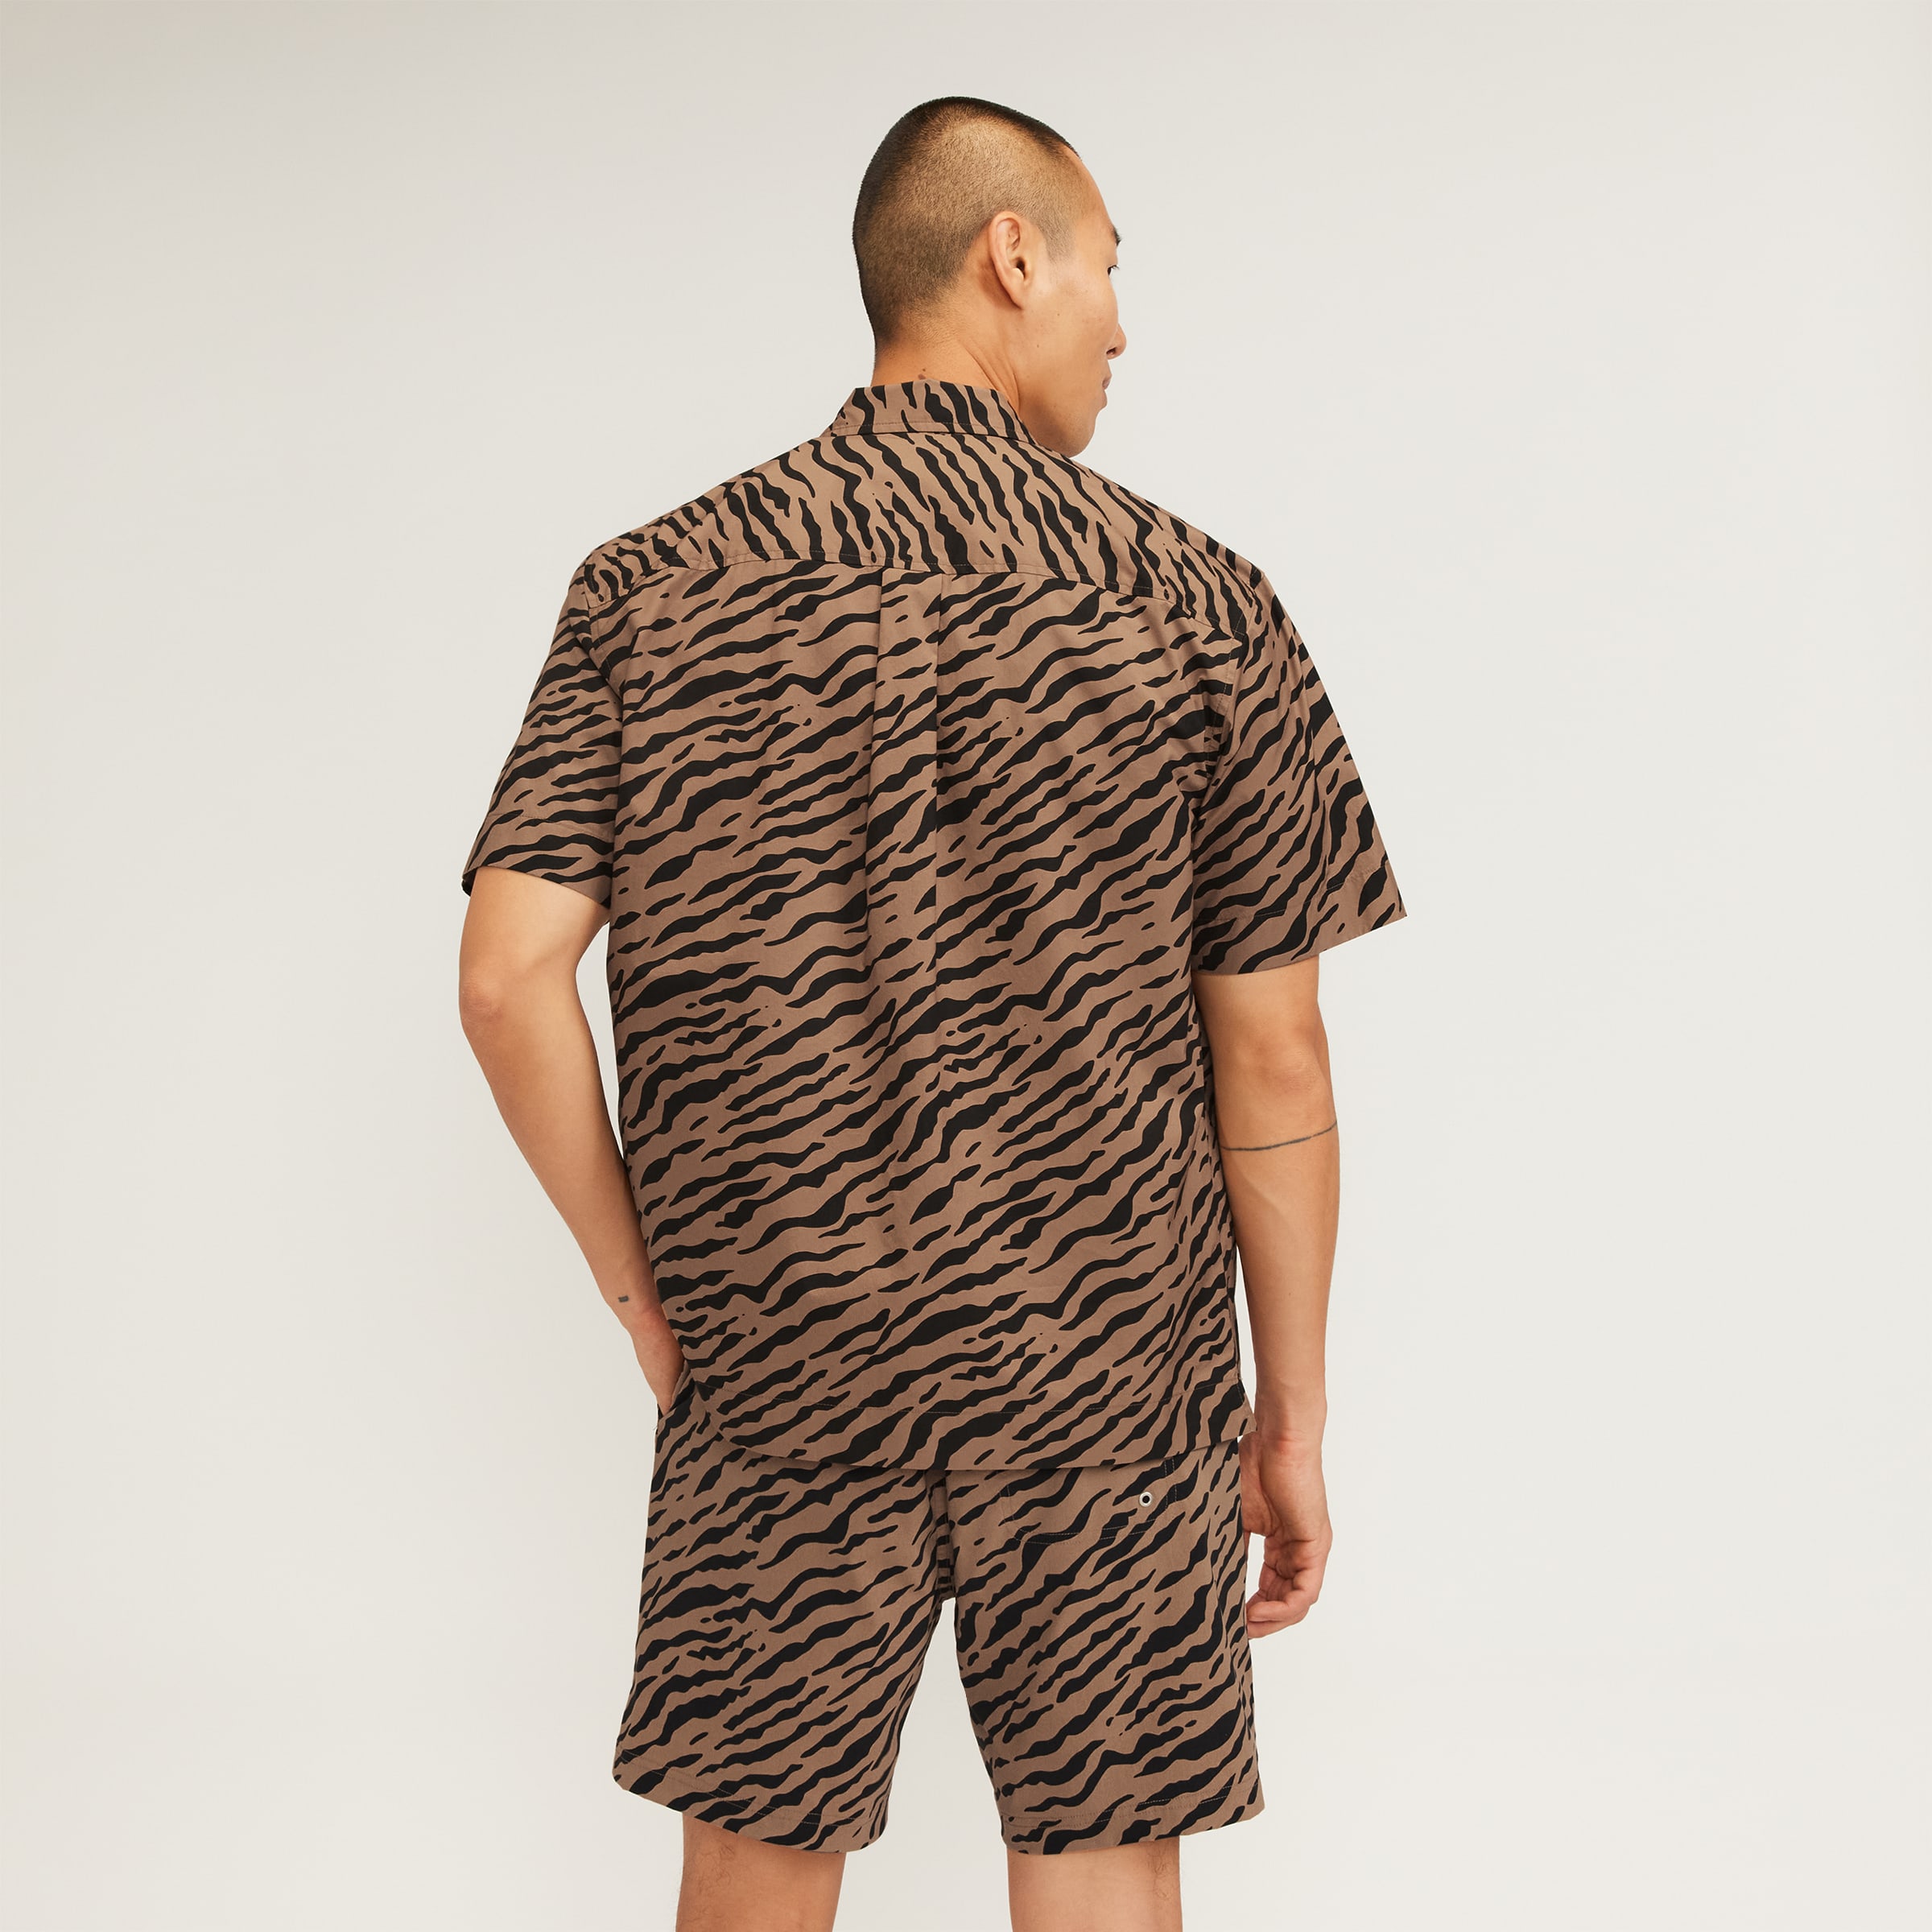 Tiger Print Short Sleeve Shirt  Topman, Mens shirts, Shirt pattern